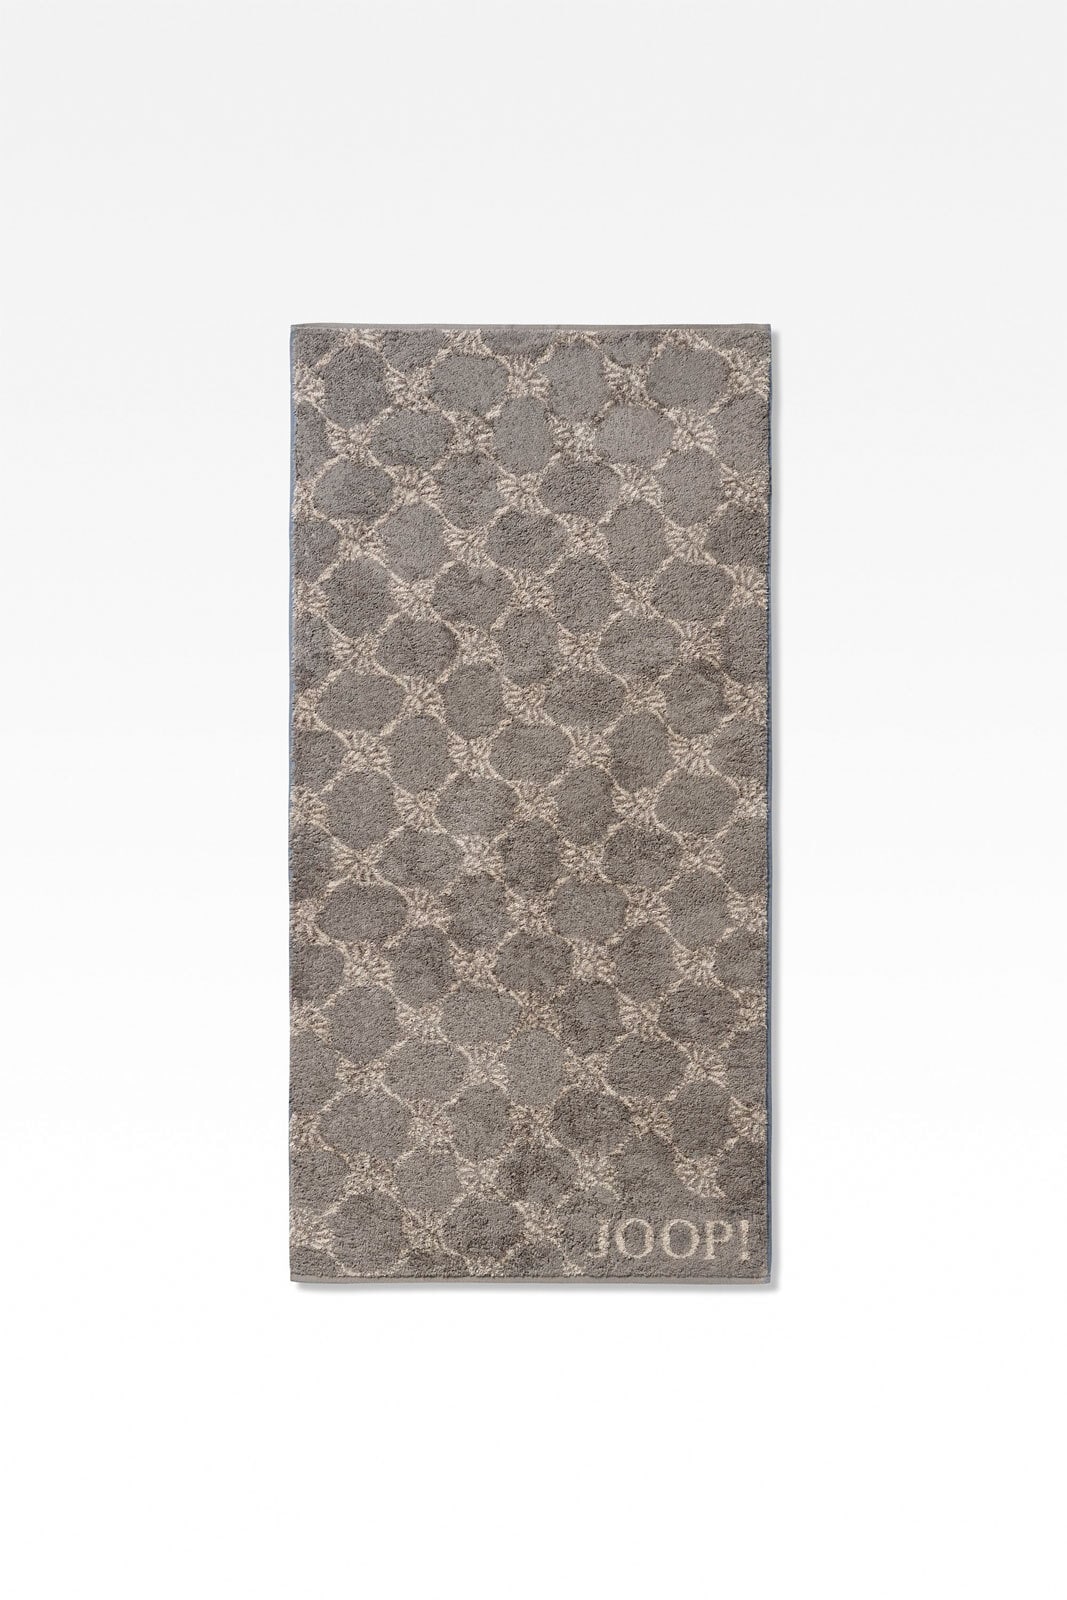 JOOP! Handtuch CORNFLOWER 50 x 100 cm graphitgrau